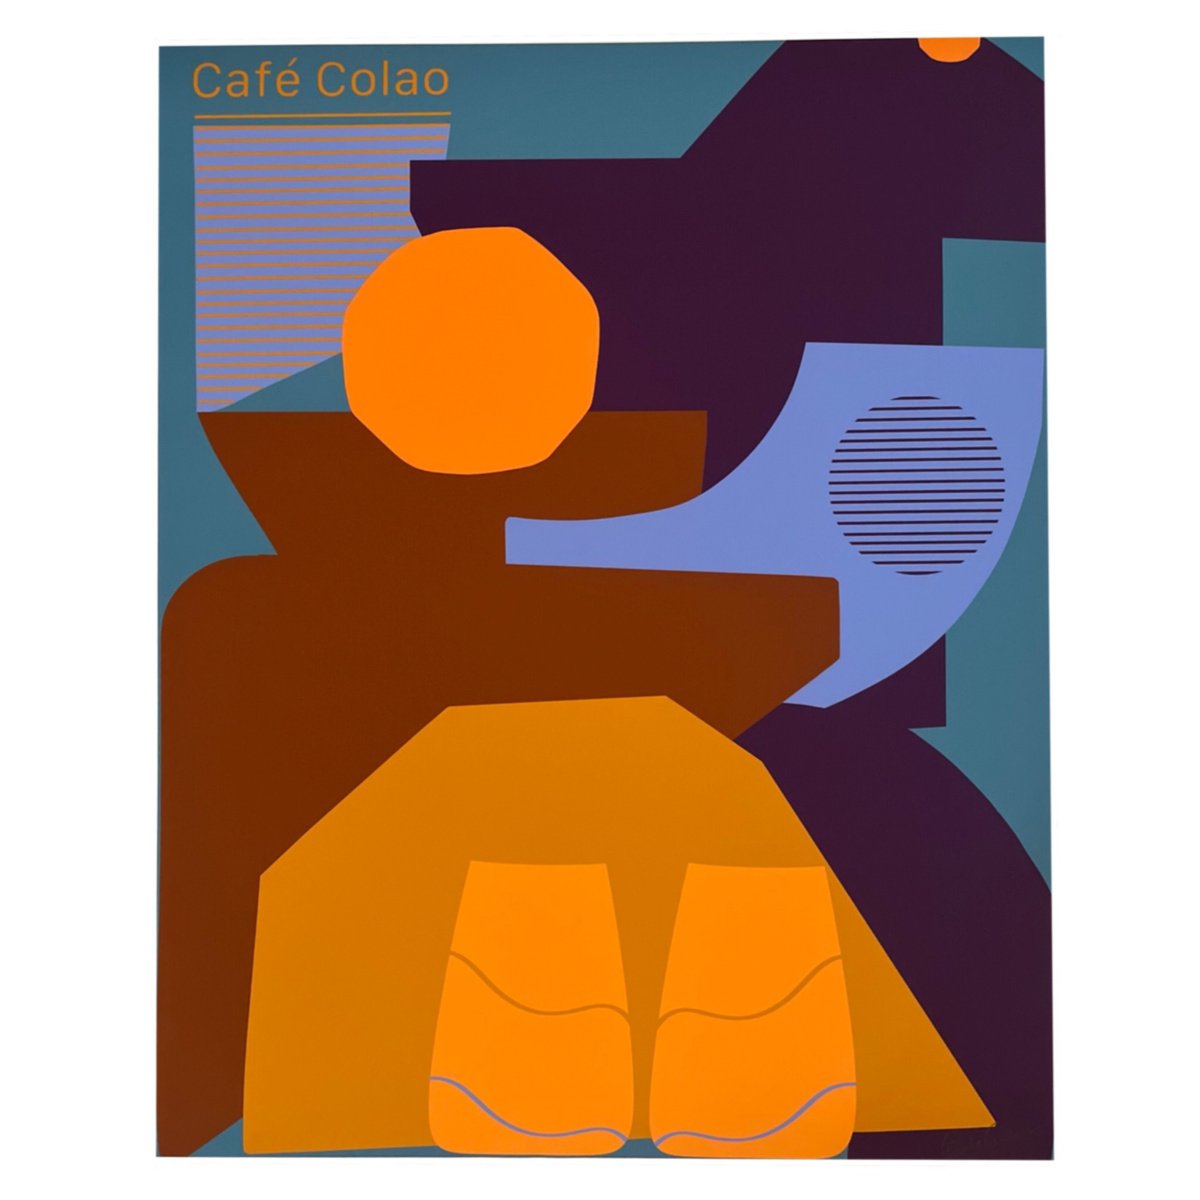 CAFE COLAO (2022) by Alexis Stroman-Varela